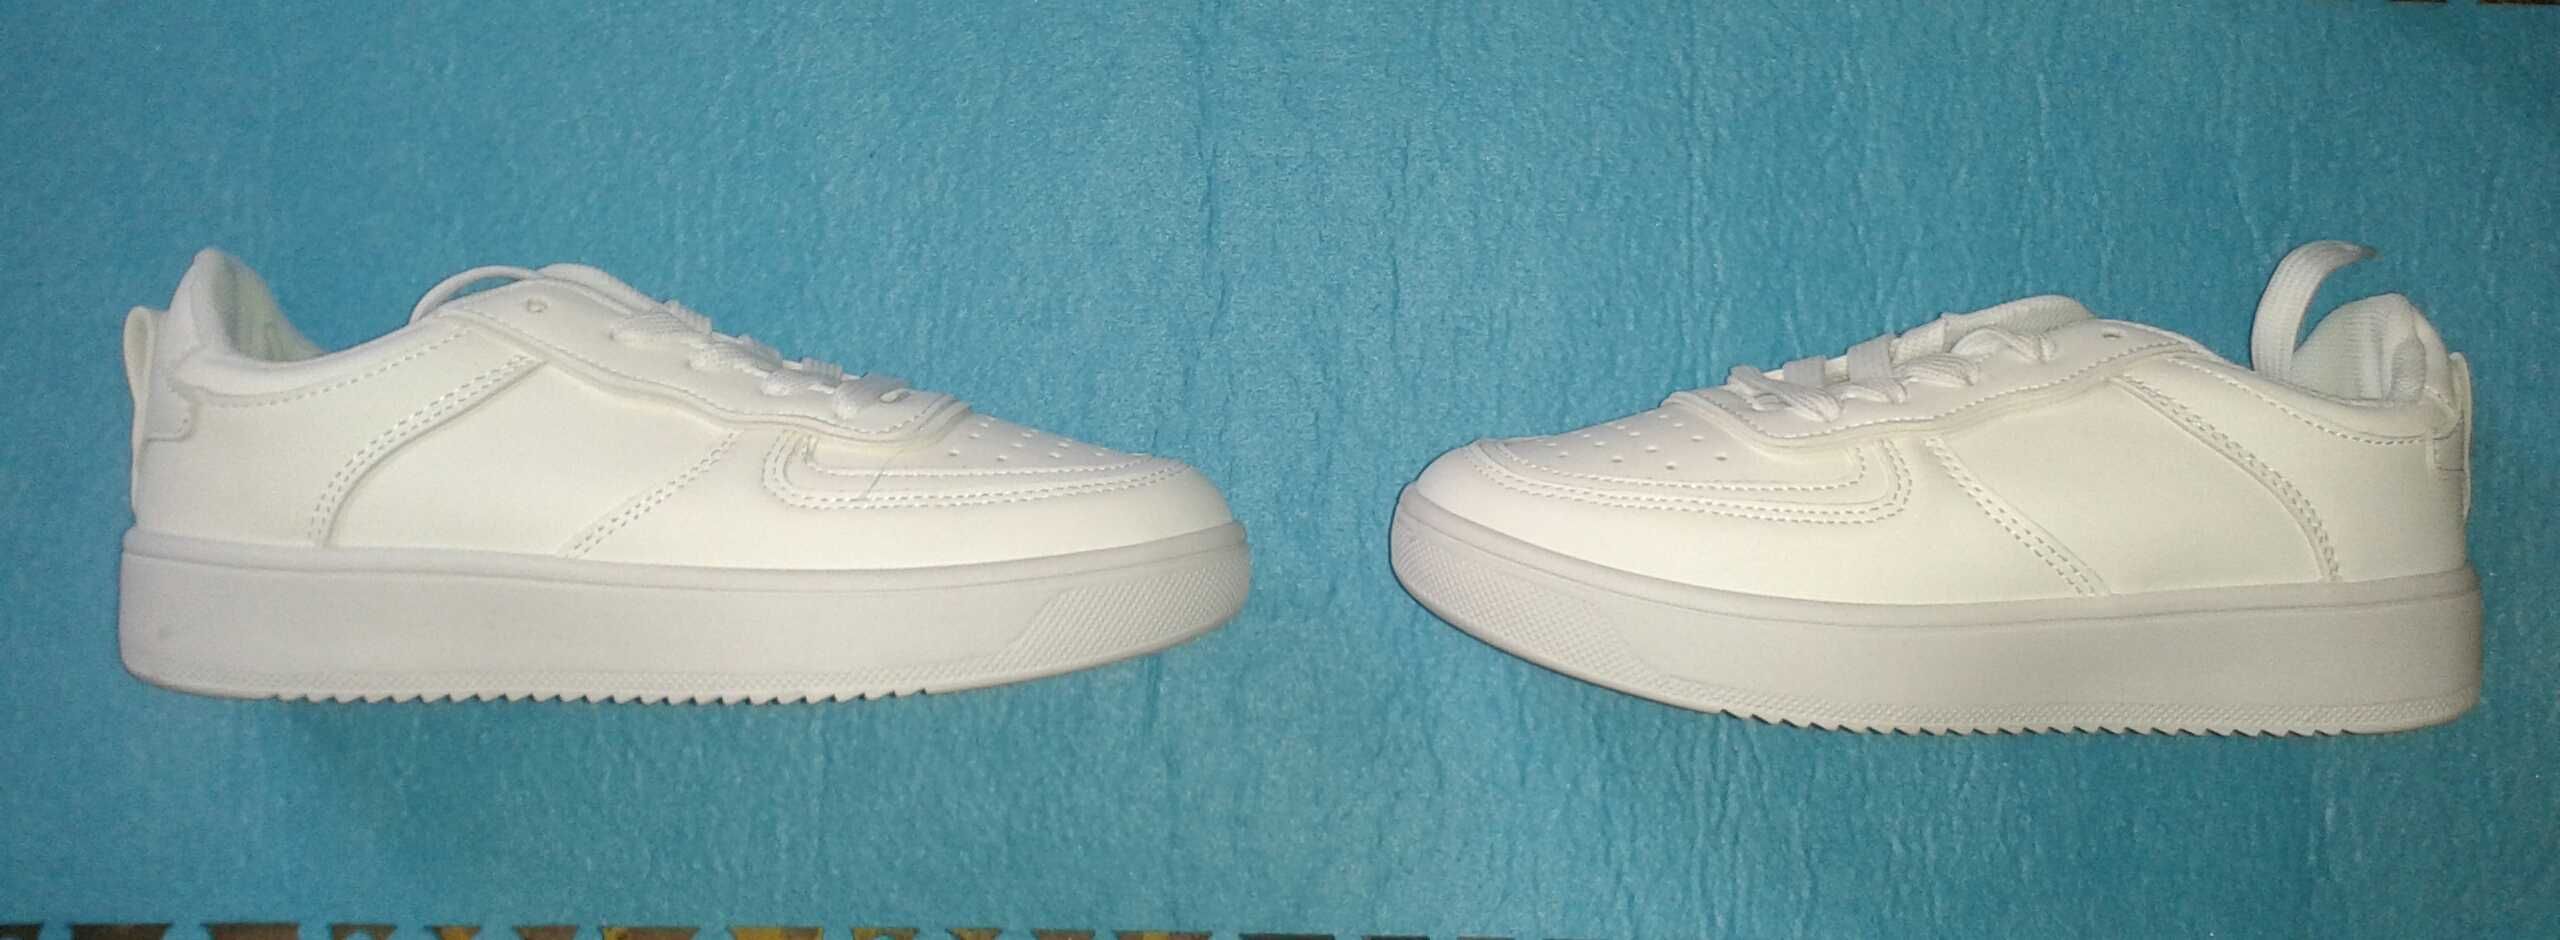 BLIŹNIAKI komunia buty komunijne dla bliźniaków białe do alb NOWE